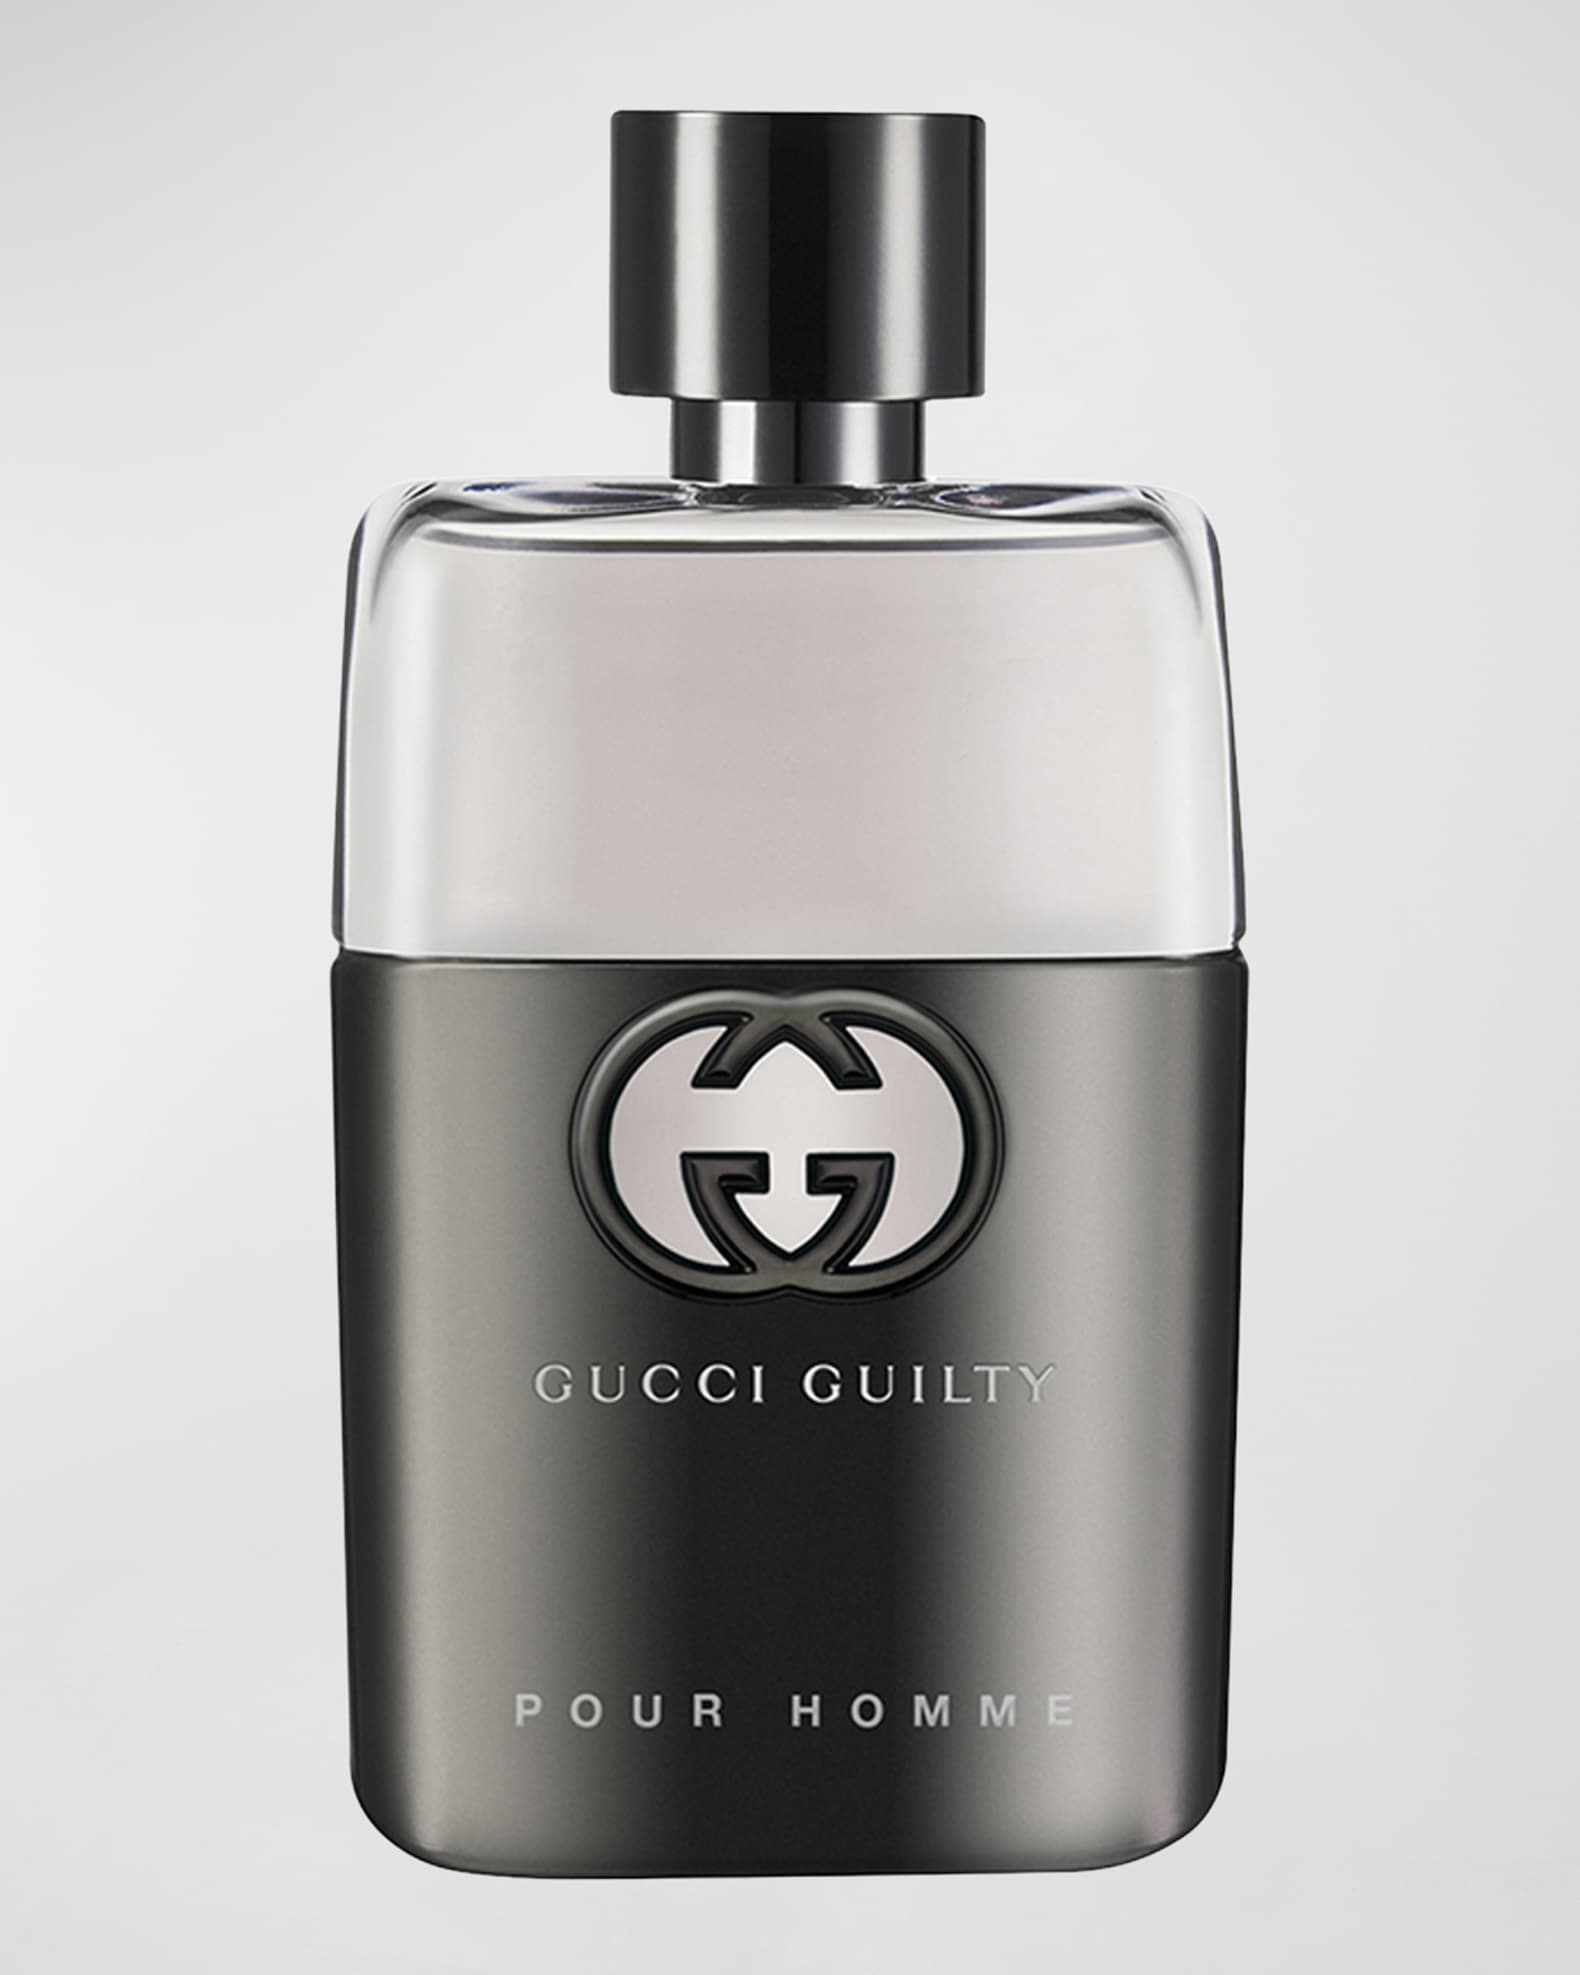 Gucci Guilty Pour Homme Eau de Toilette, 1.7 oz./ 50 mL | Neiman Marcus